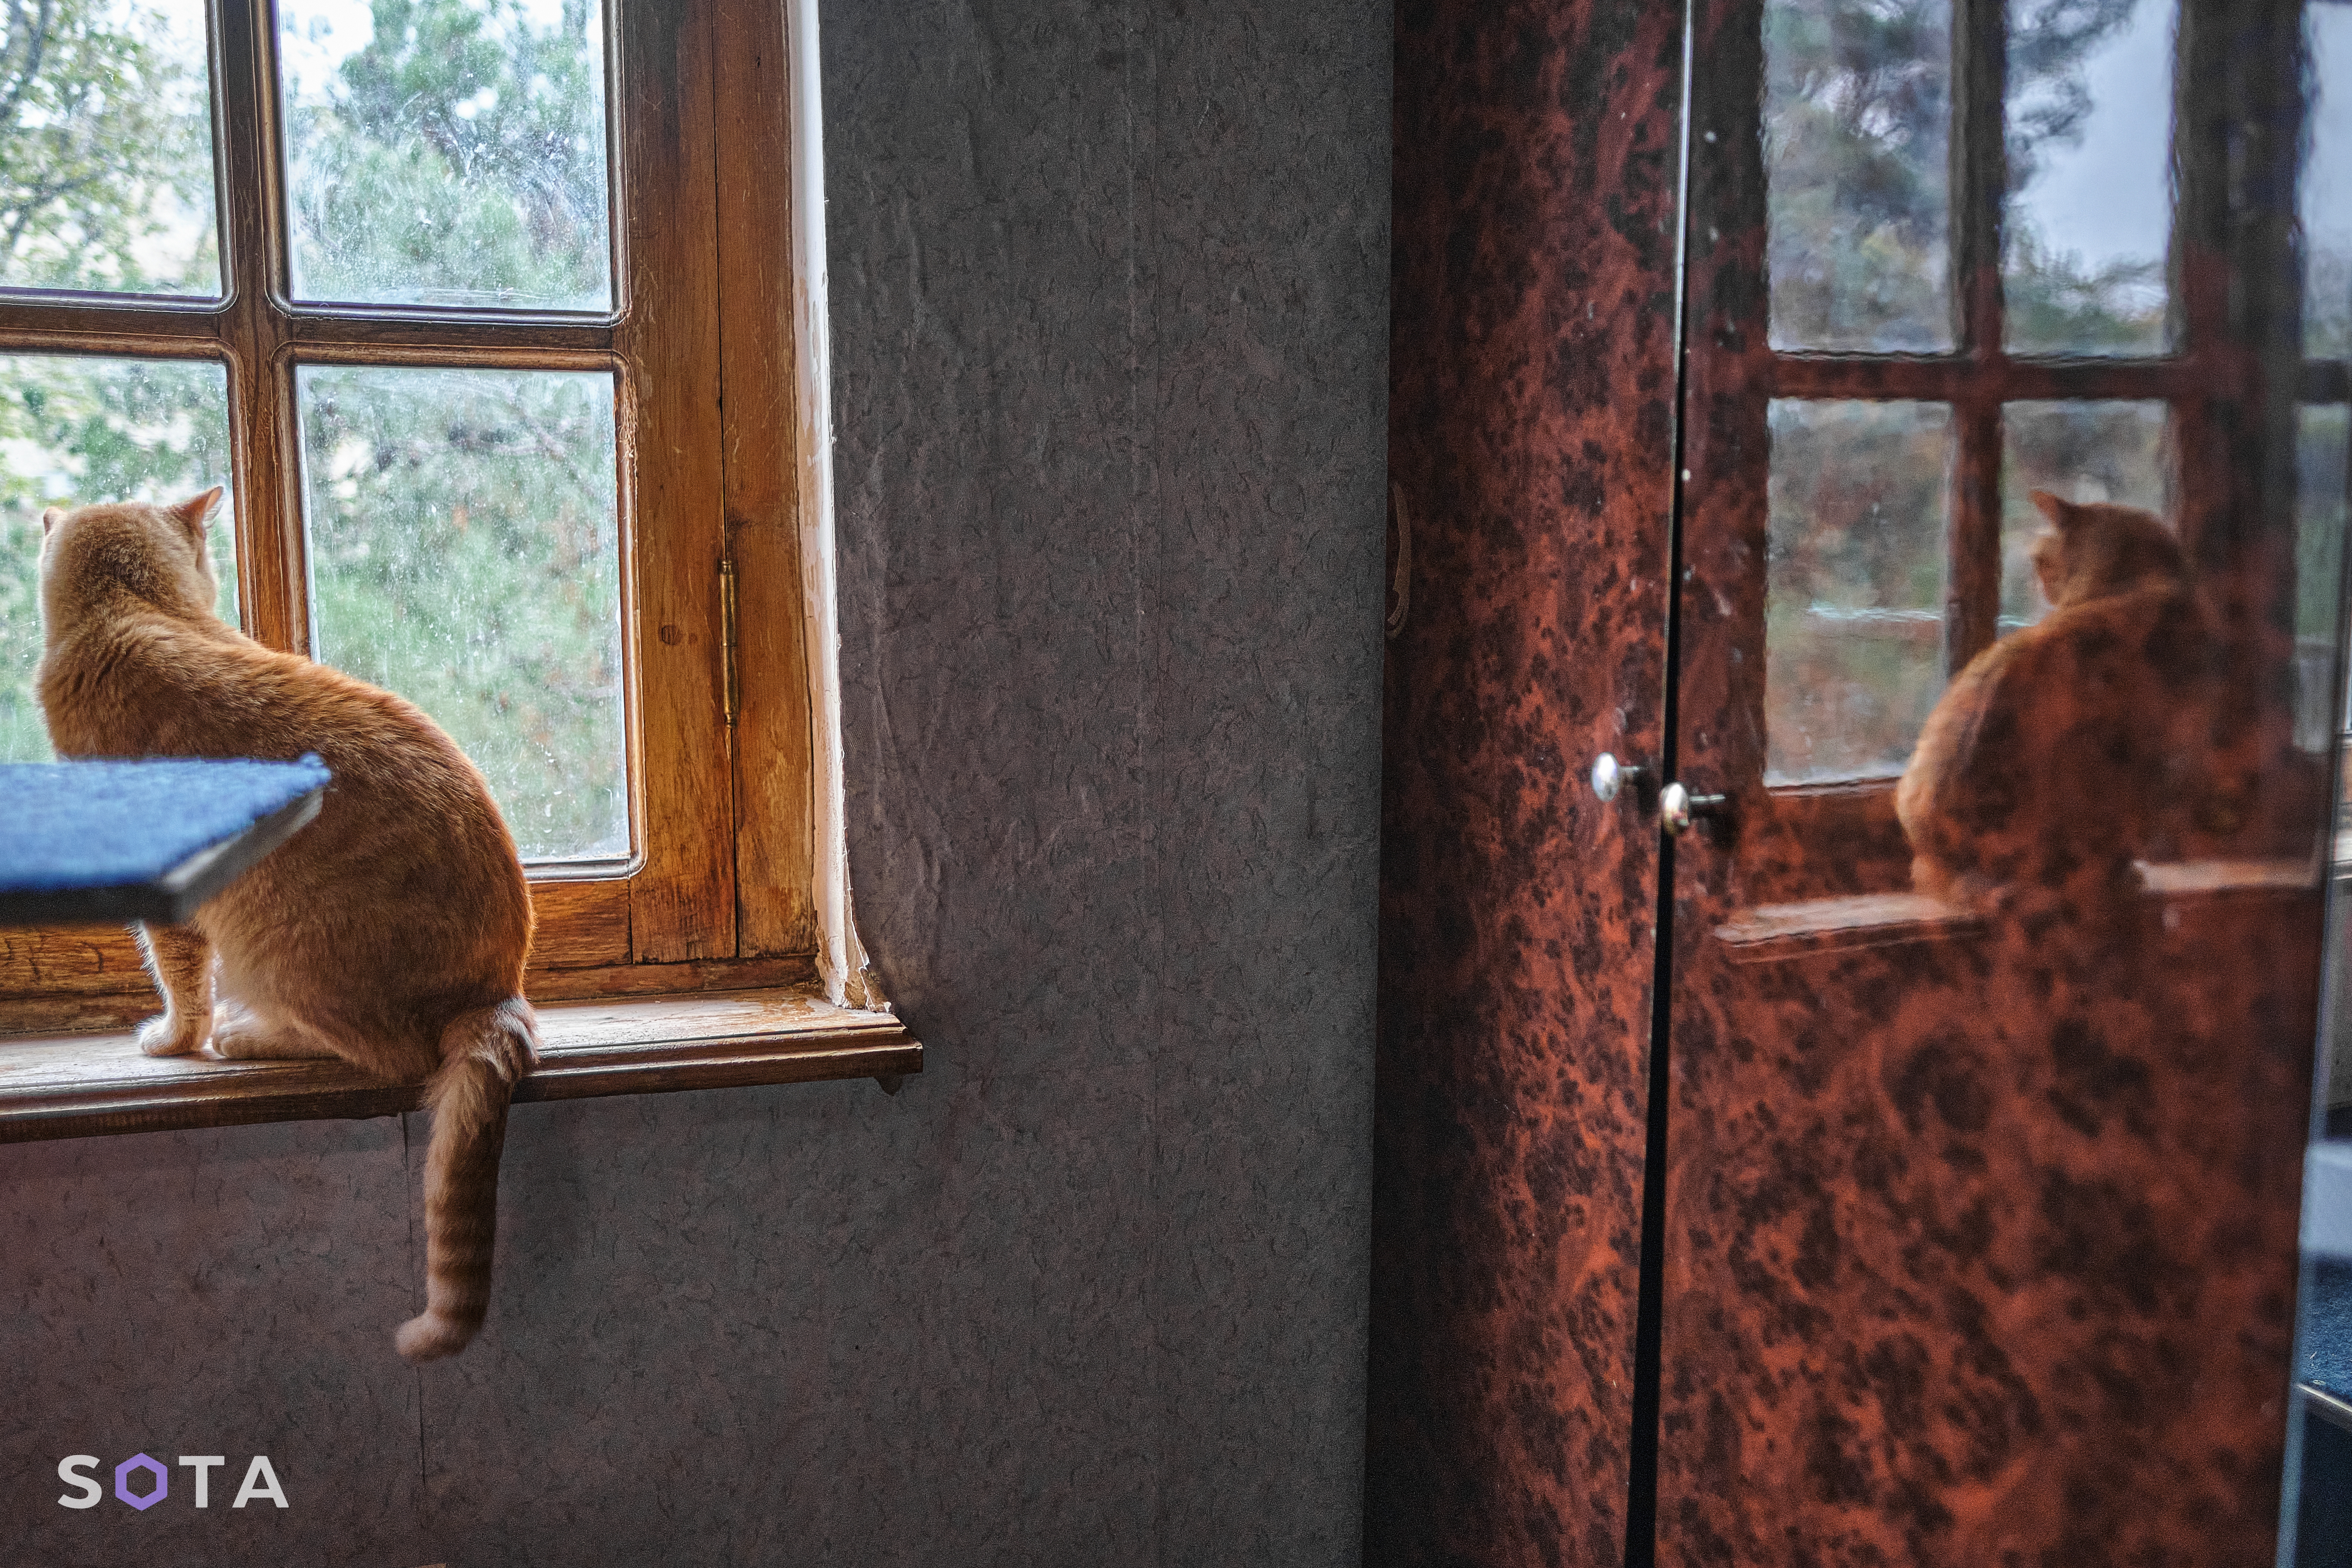 Кошка Мадам ждет своего хозяина.
Денис Галицын / SOTA